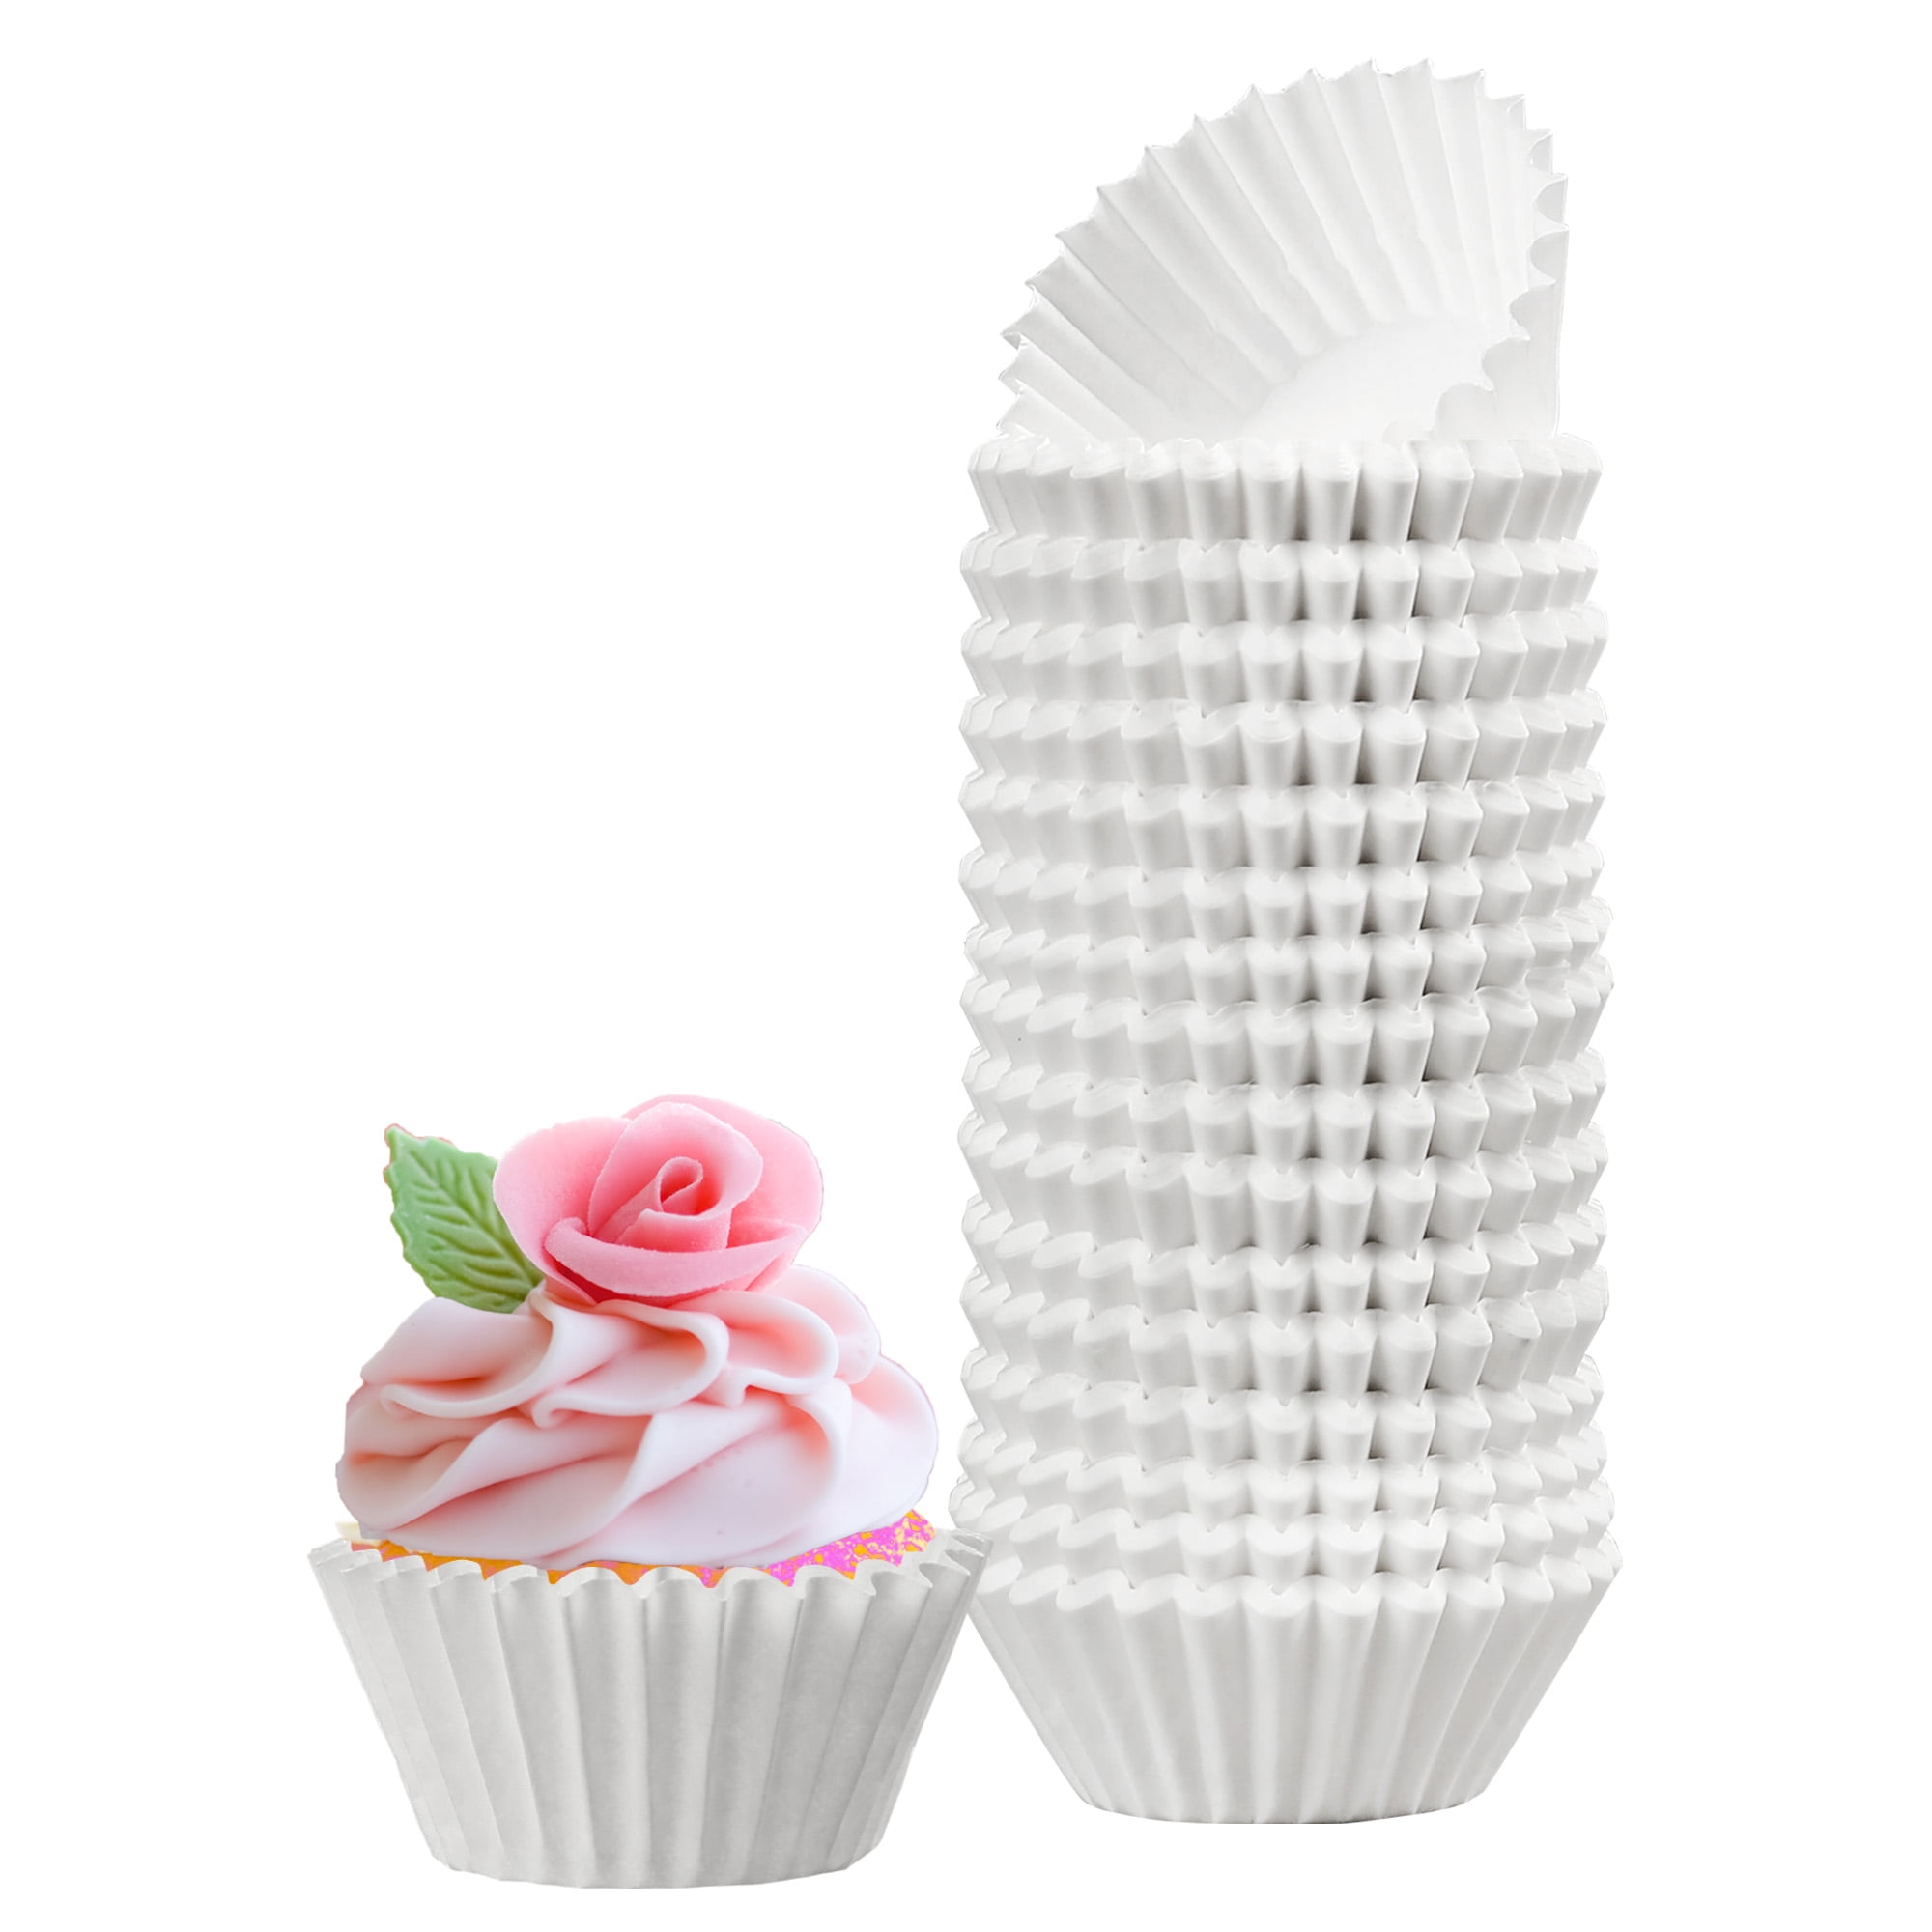 Mini Cupcake Liners, Unbleached Paper - Fante's Kitchen Shop - Since 1906